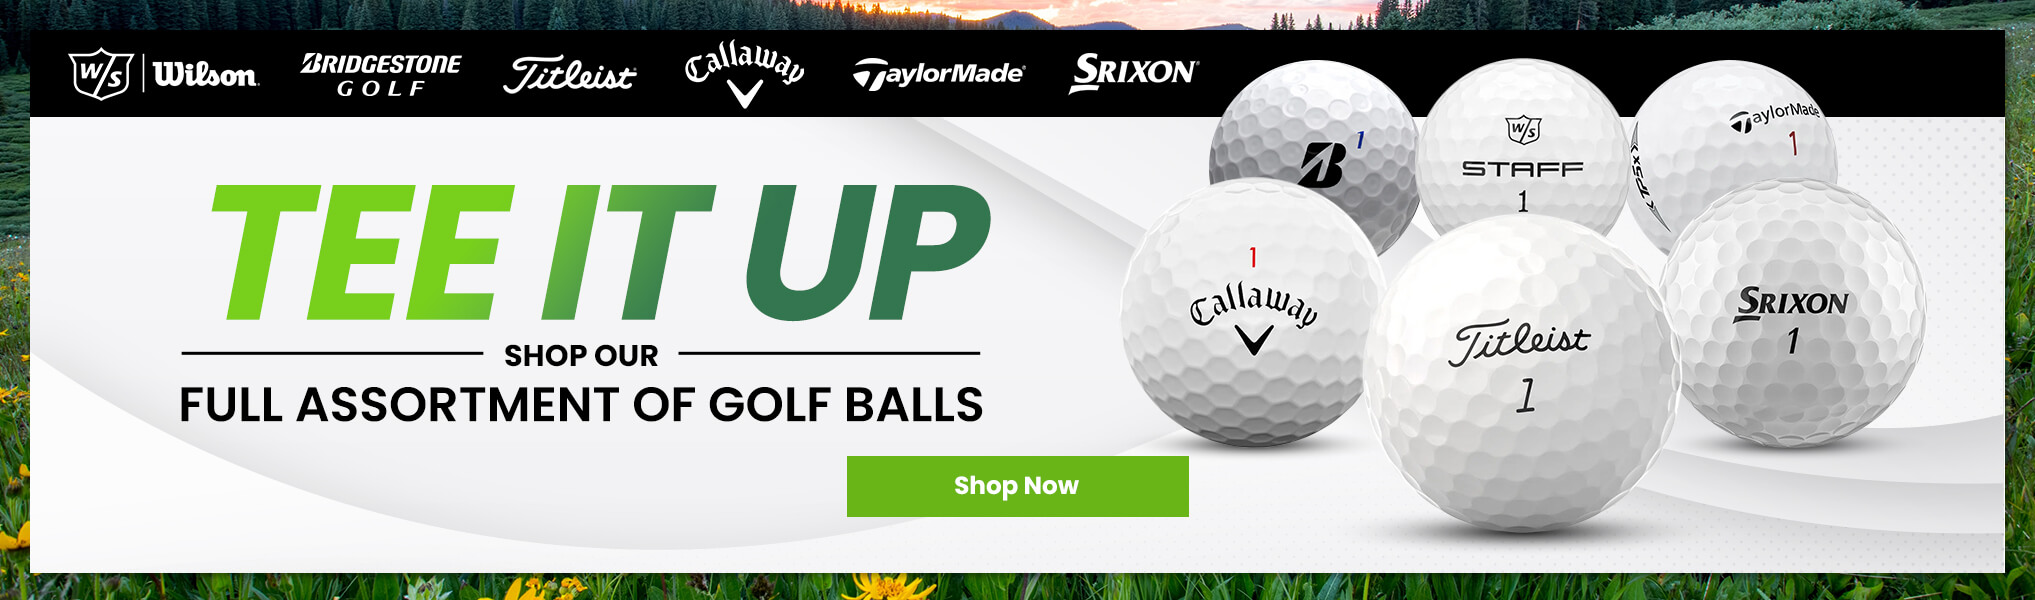 Shop Golf Balls at Worldwide Golf Shops